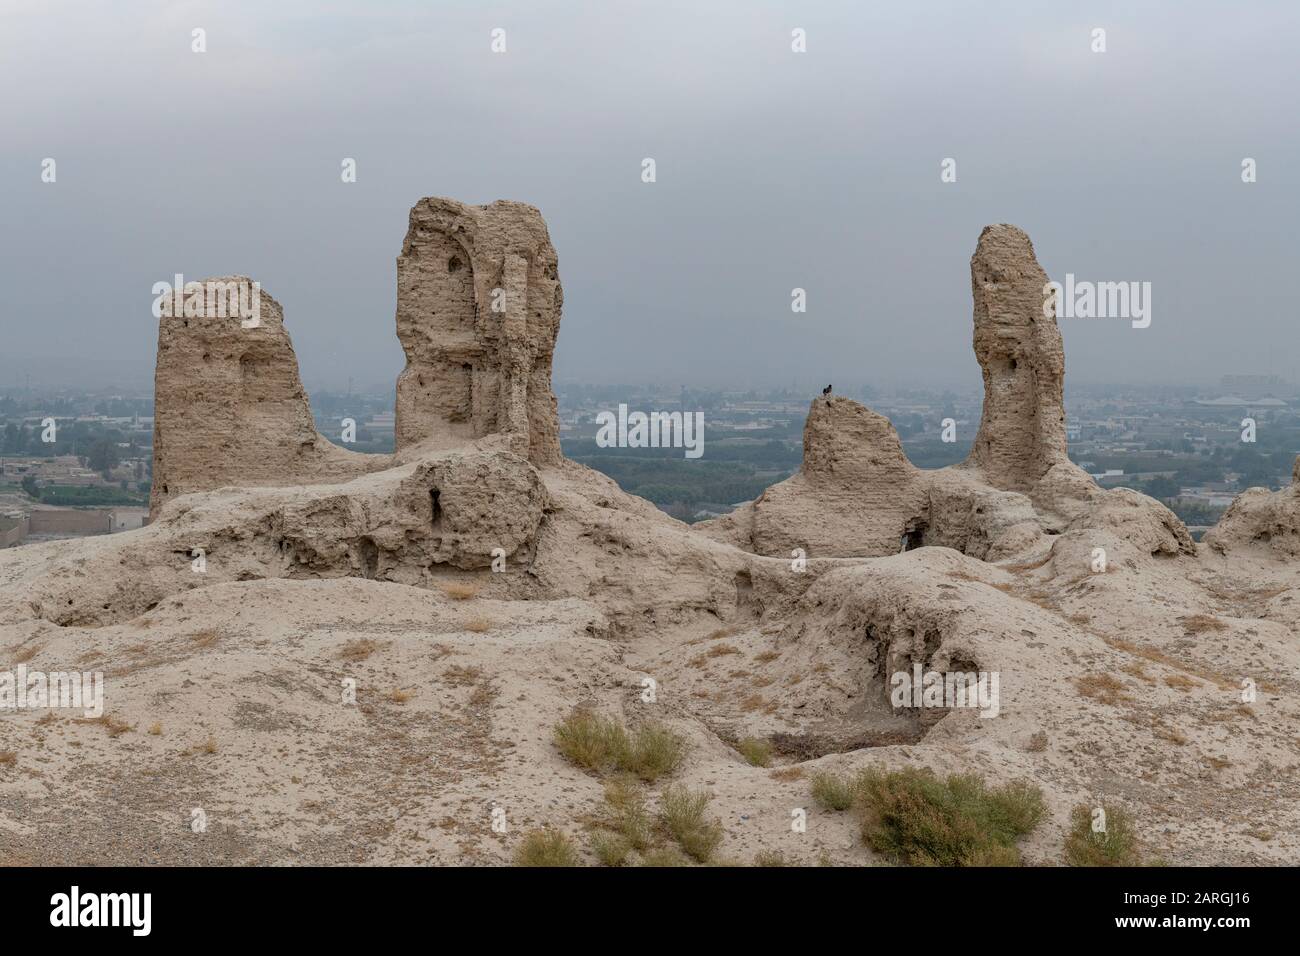 Ruins of old Kandahar, Zorr Shar, founded by Alexander the Great, Kandahar, Afghanistan, Asia Stock Photo